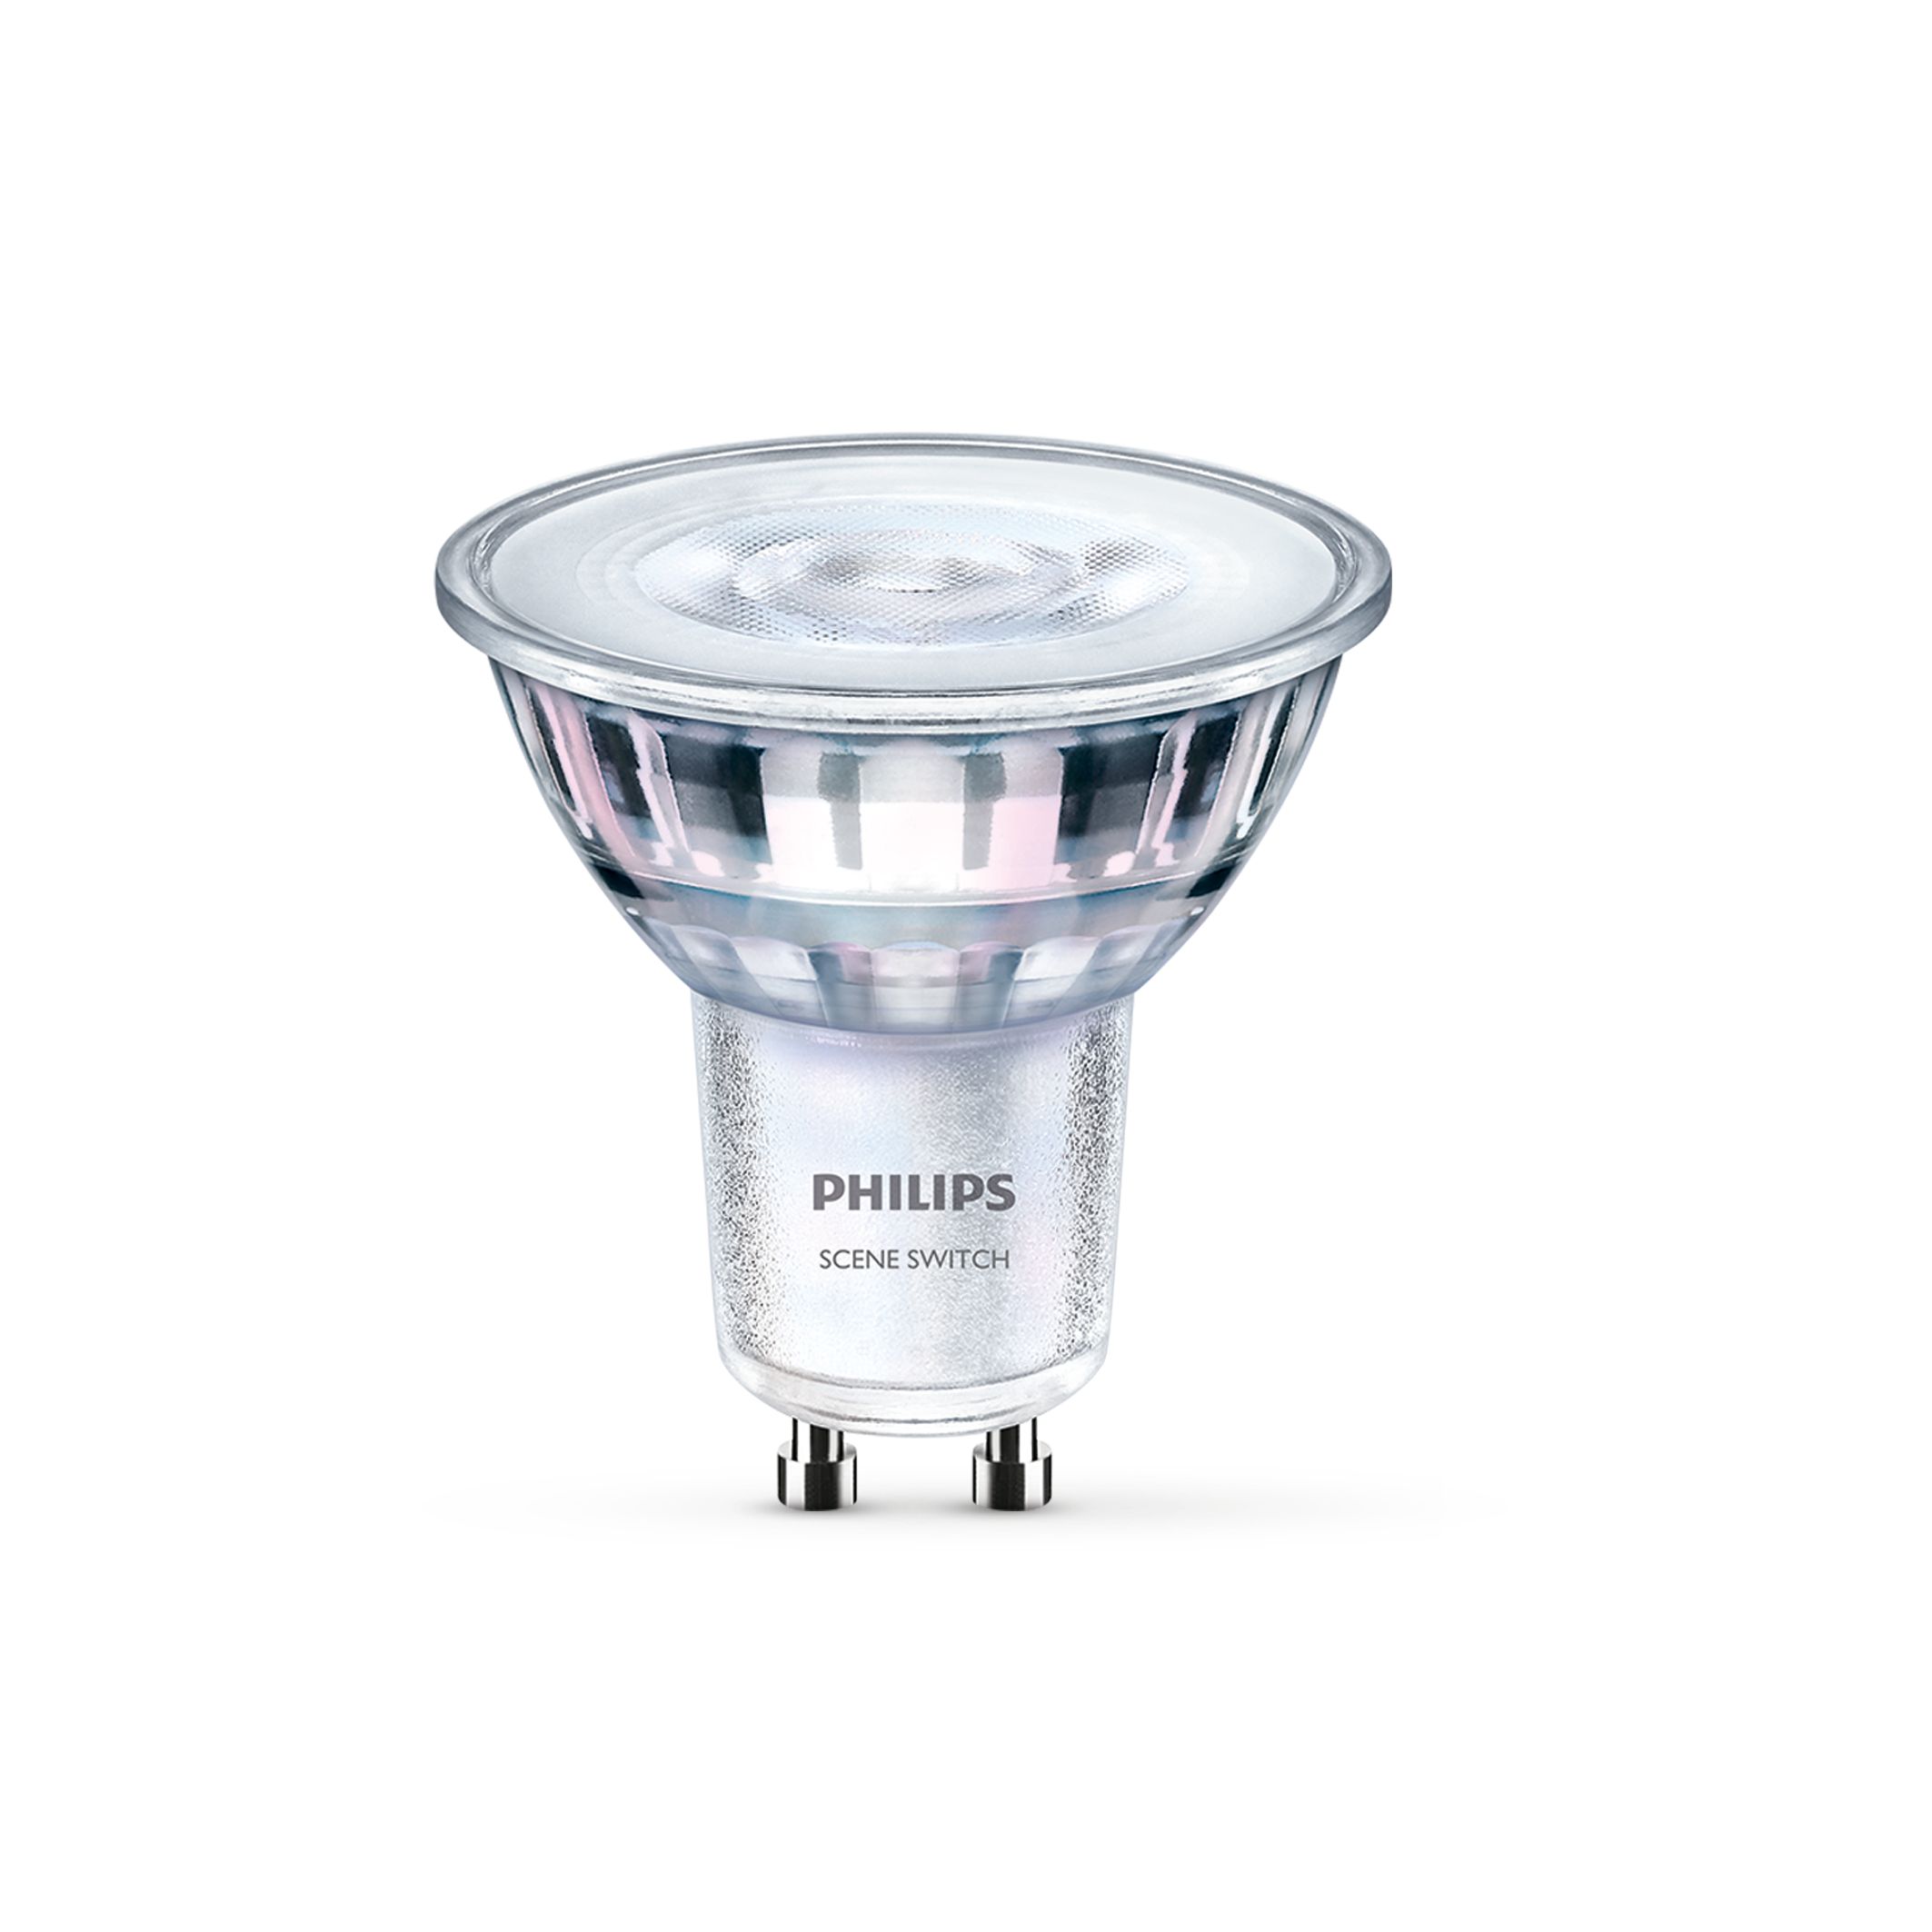 Prooi Zijdelings maximaal SceneSwitch LEDspot | 7178651 | Philips lighting